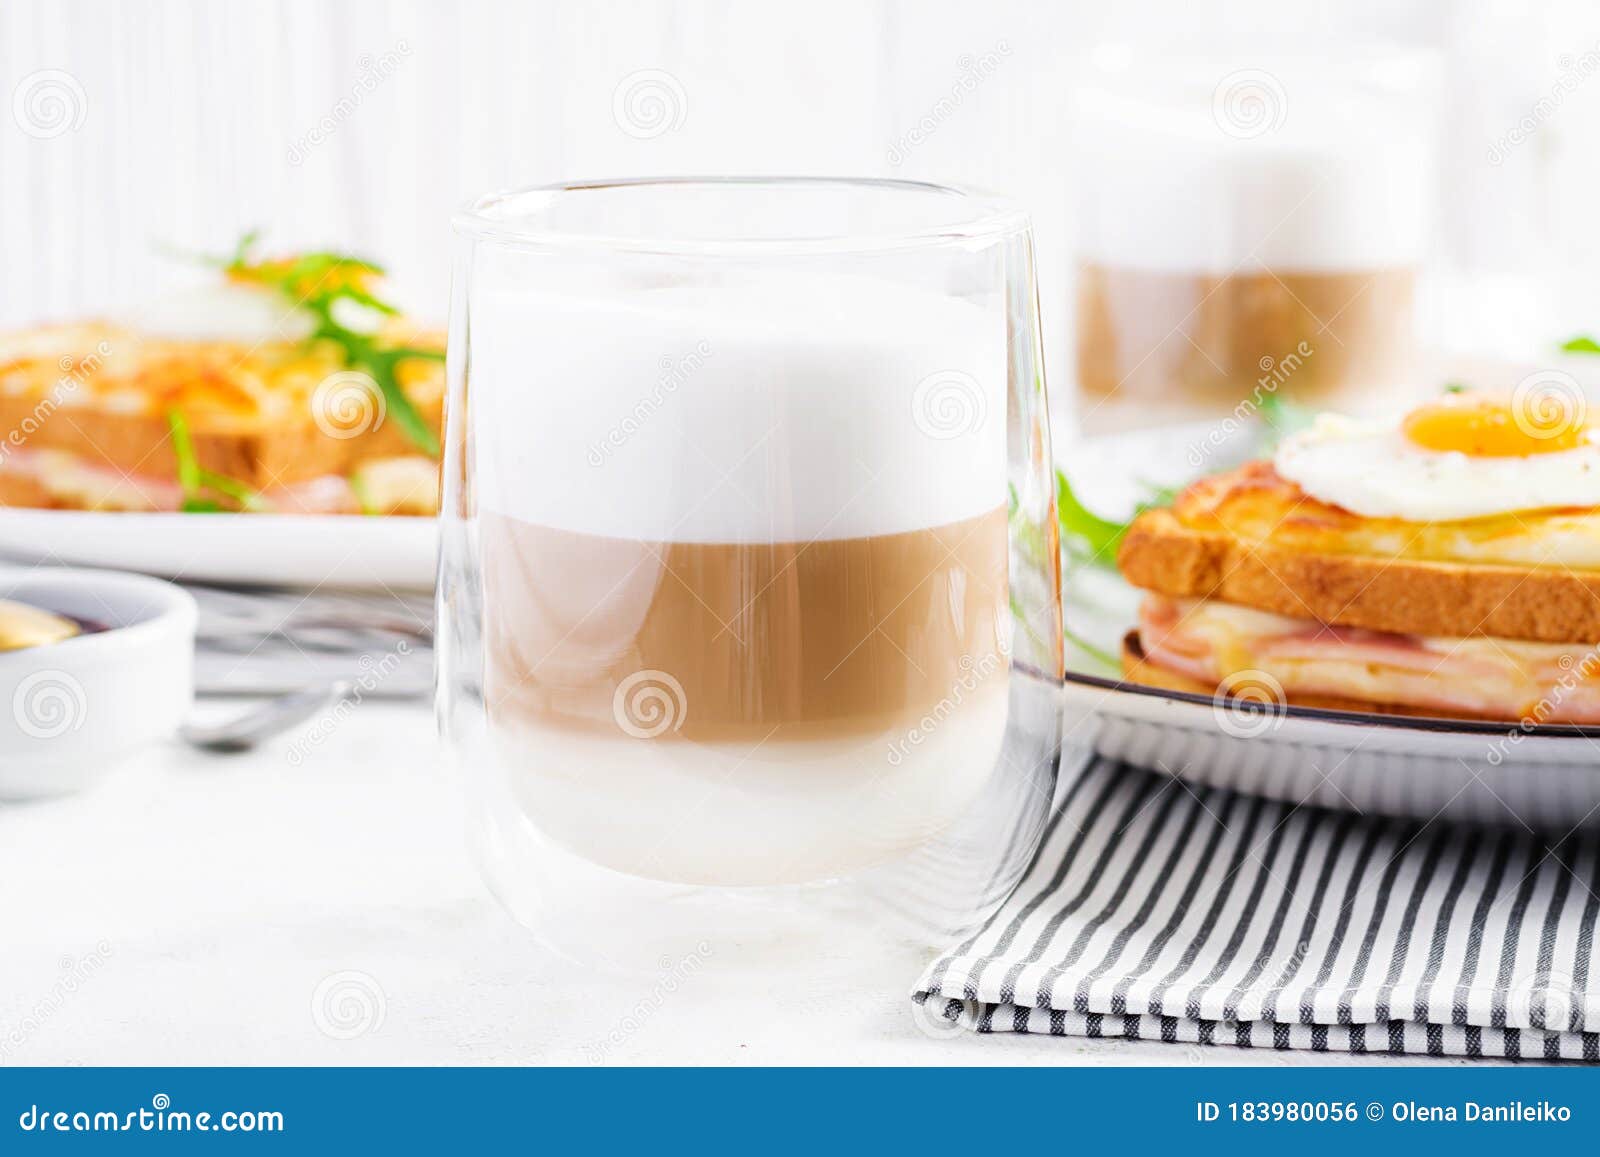 coffee cafe latte macchiato in a glass